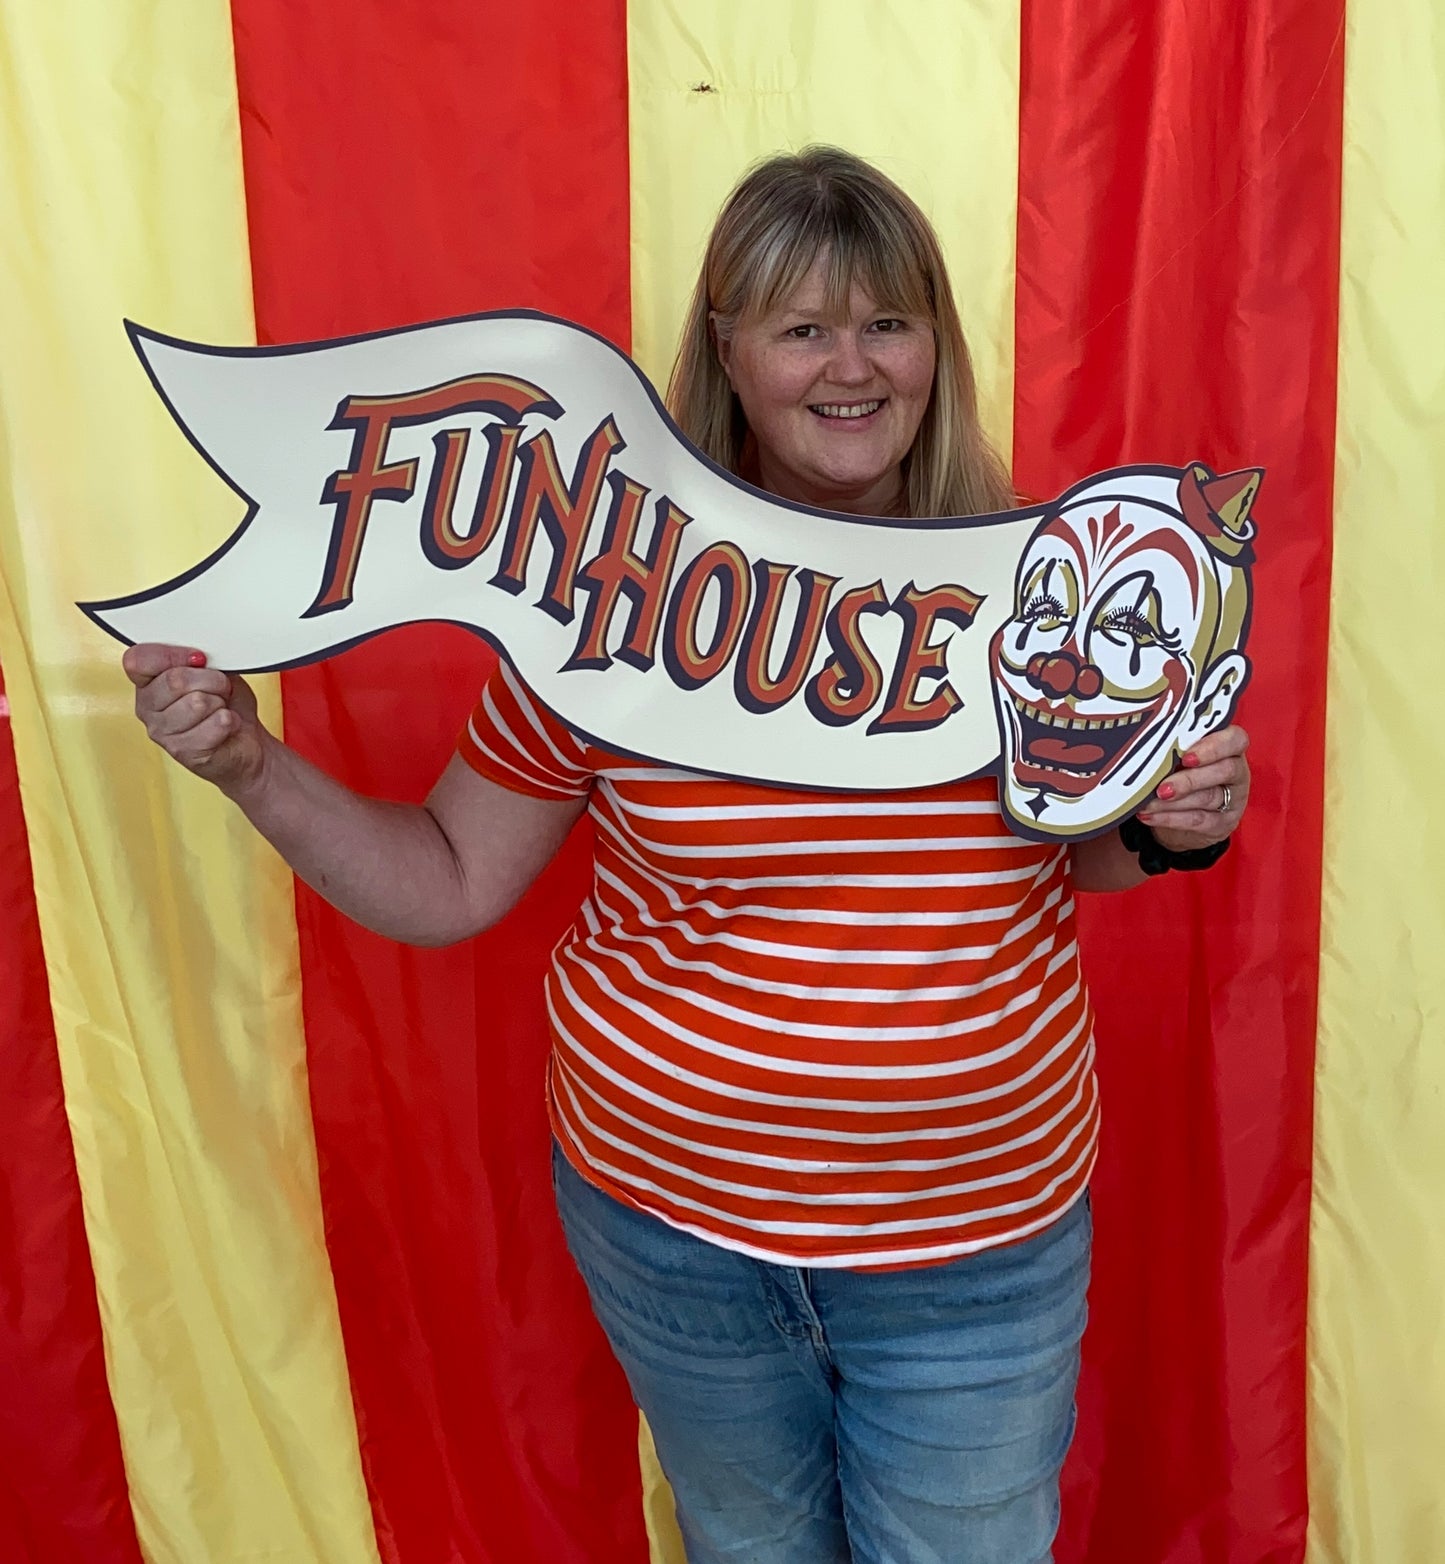 Funhouse Circus Sign